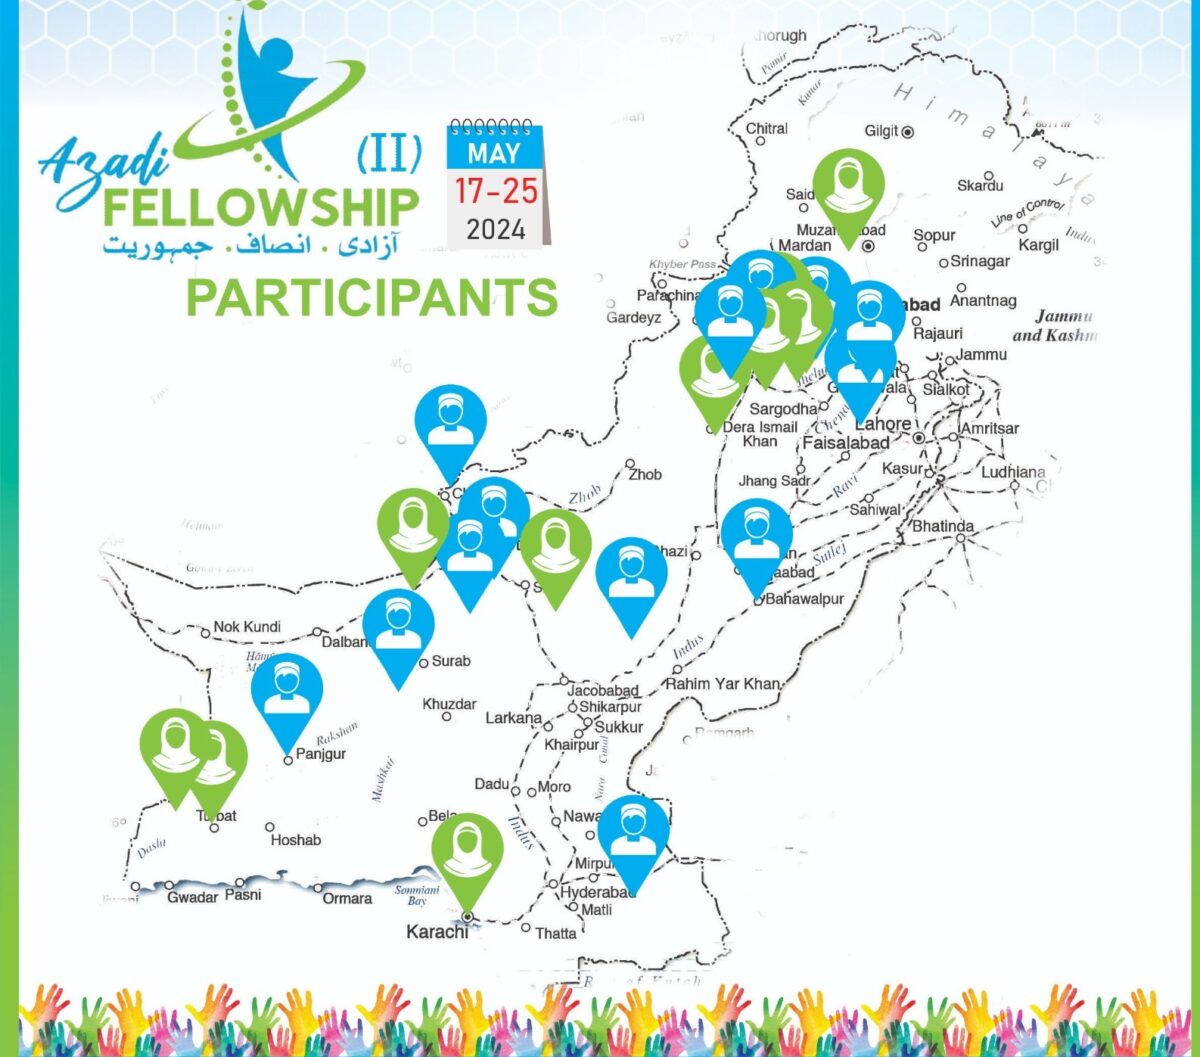 IRCRA launches ‘Azadi Fellowship Program’ to promote religious freedom, democracy across nation